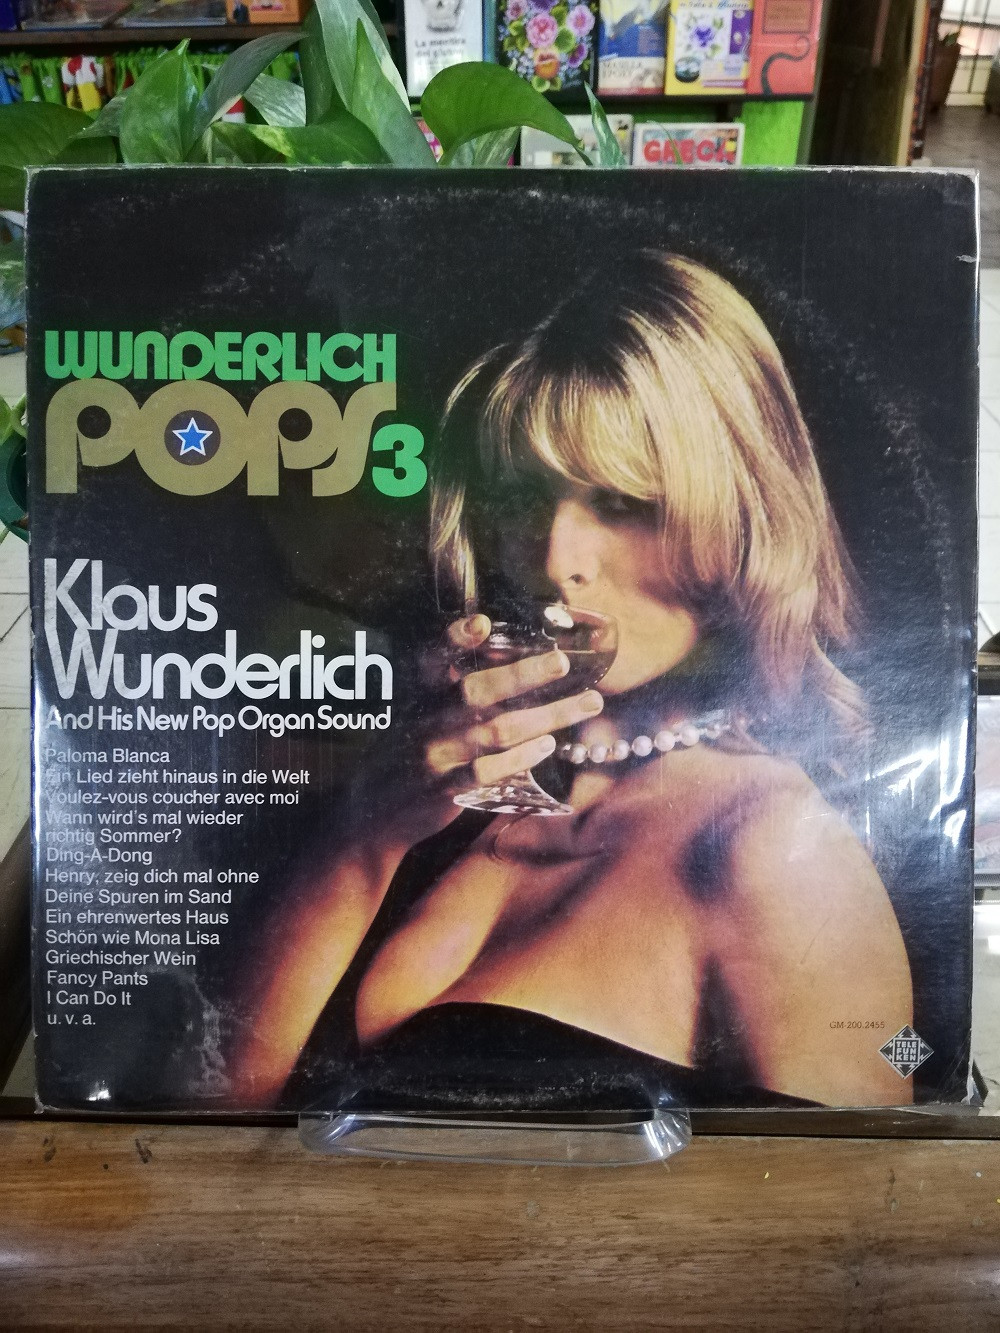 Imagen LP KLAUS WUNDERLICH ANSD HIS NEW POP ORGAN SOUND - WUNDERLICH POPS 3 1